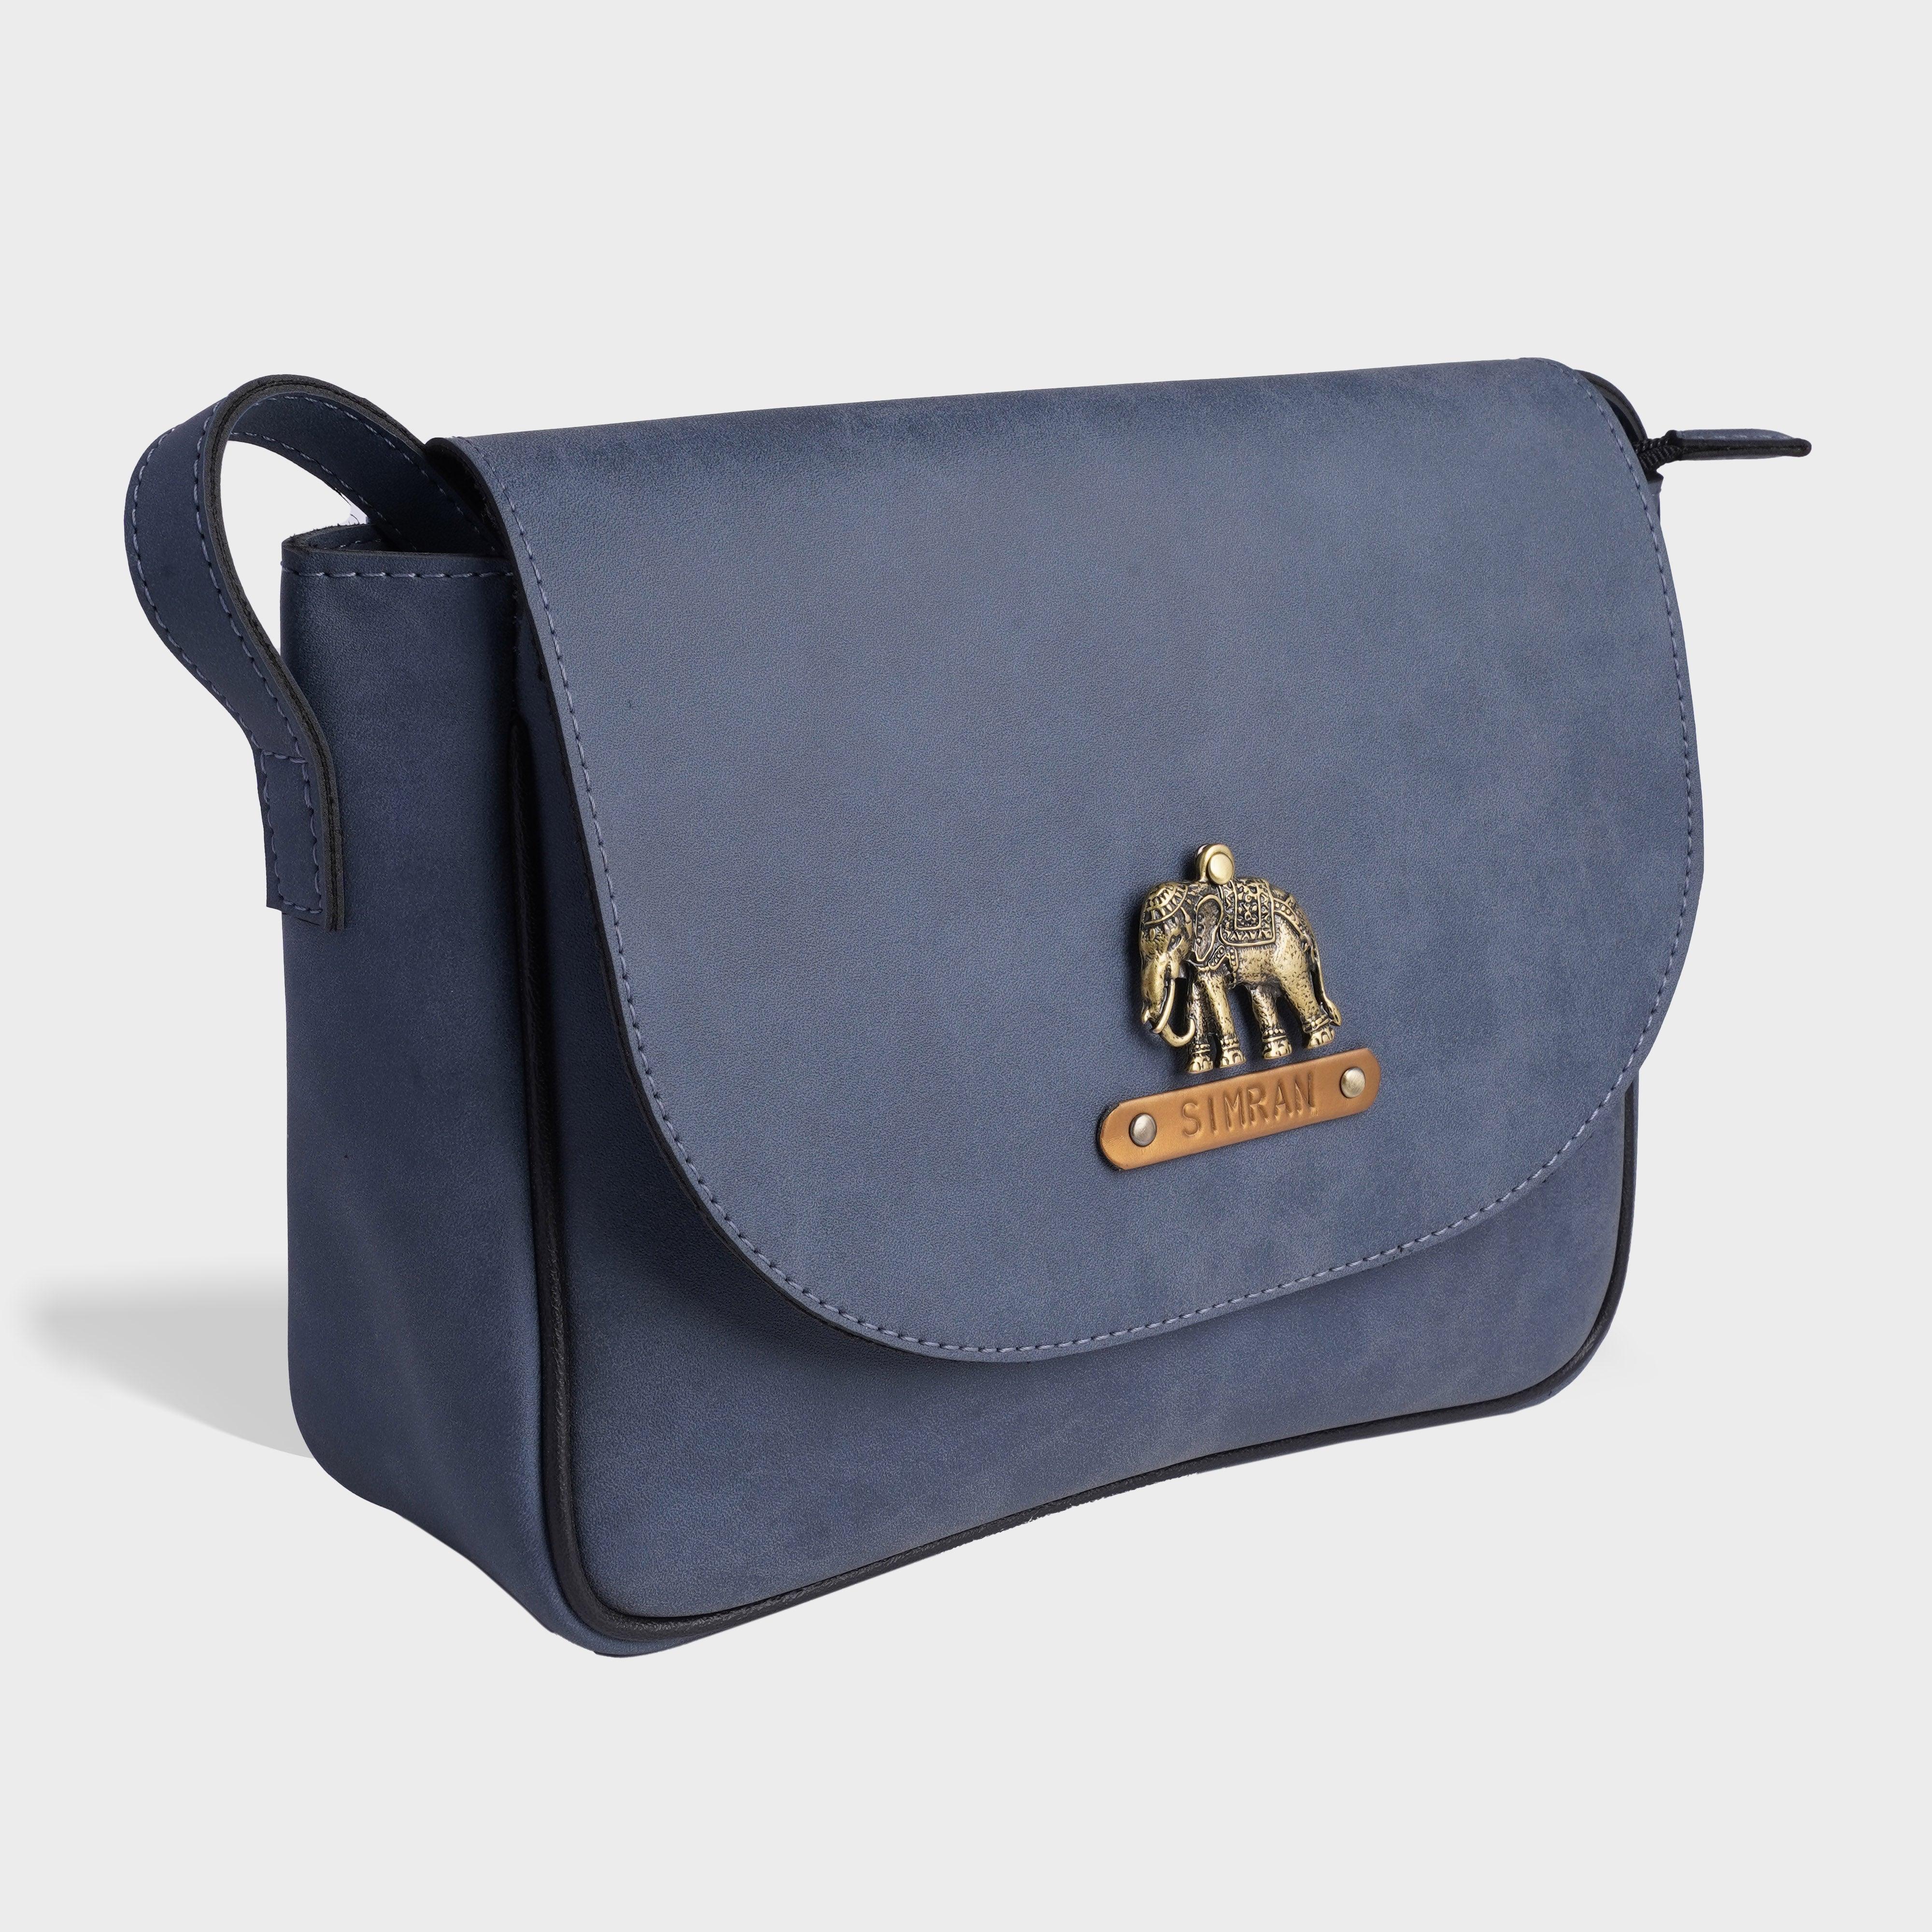 Personalised Satchel Crossbody Bag-Jeans Blue - Travelsleek